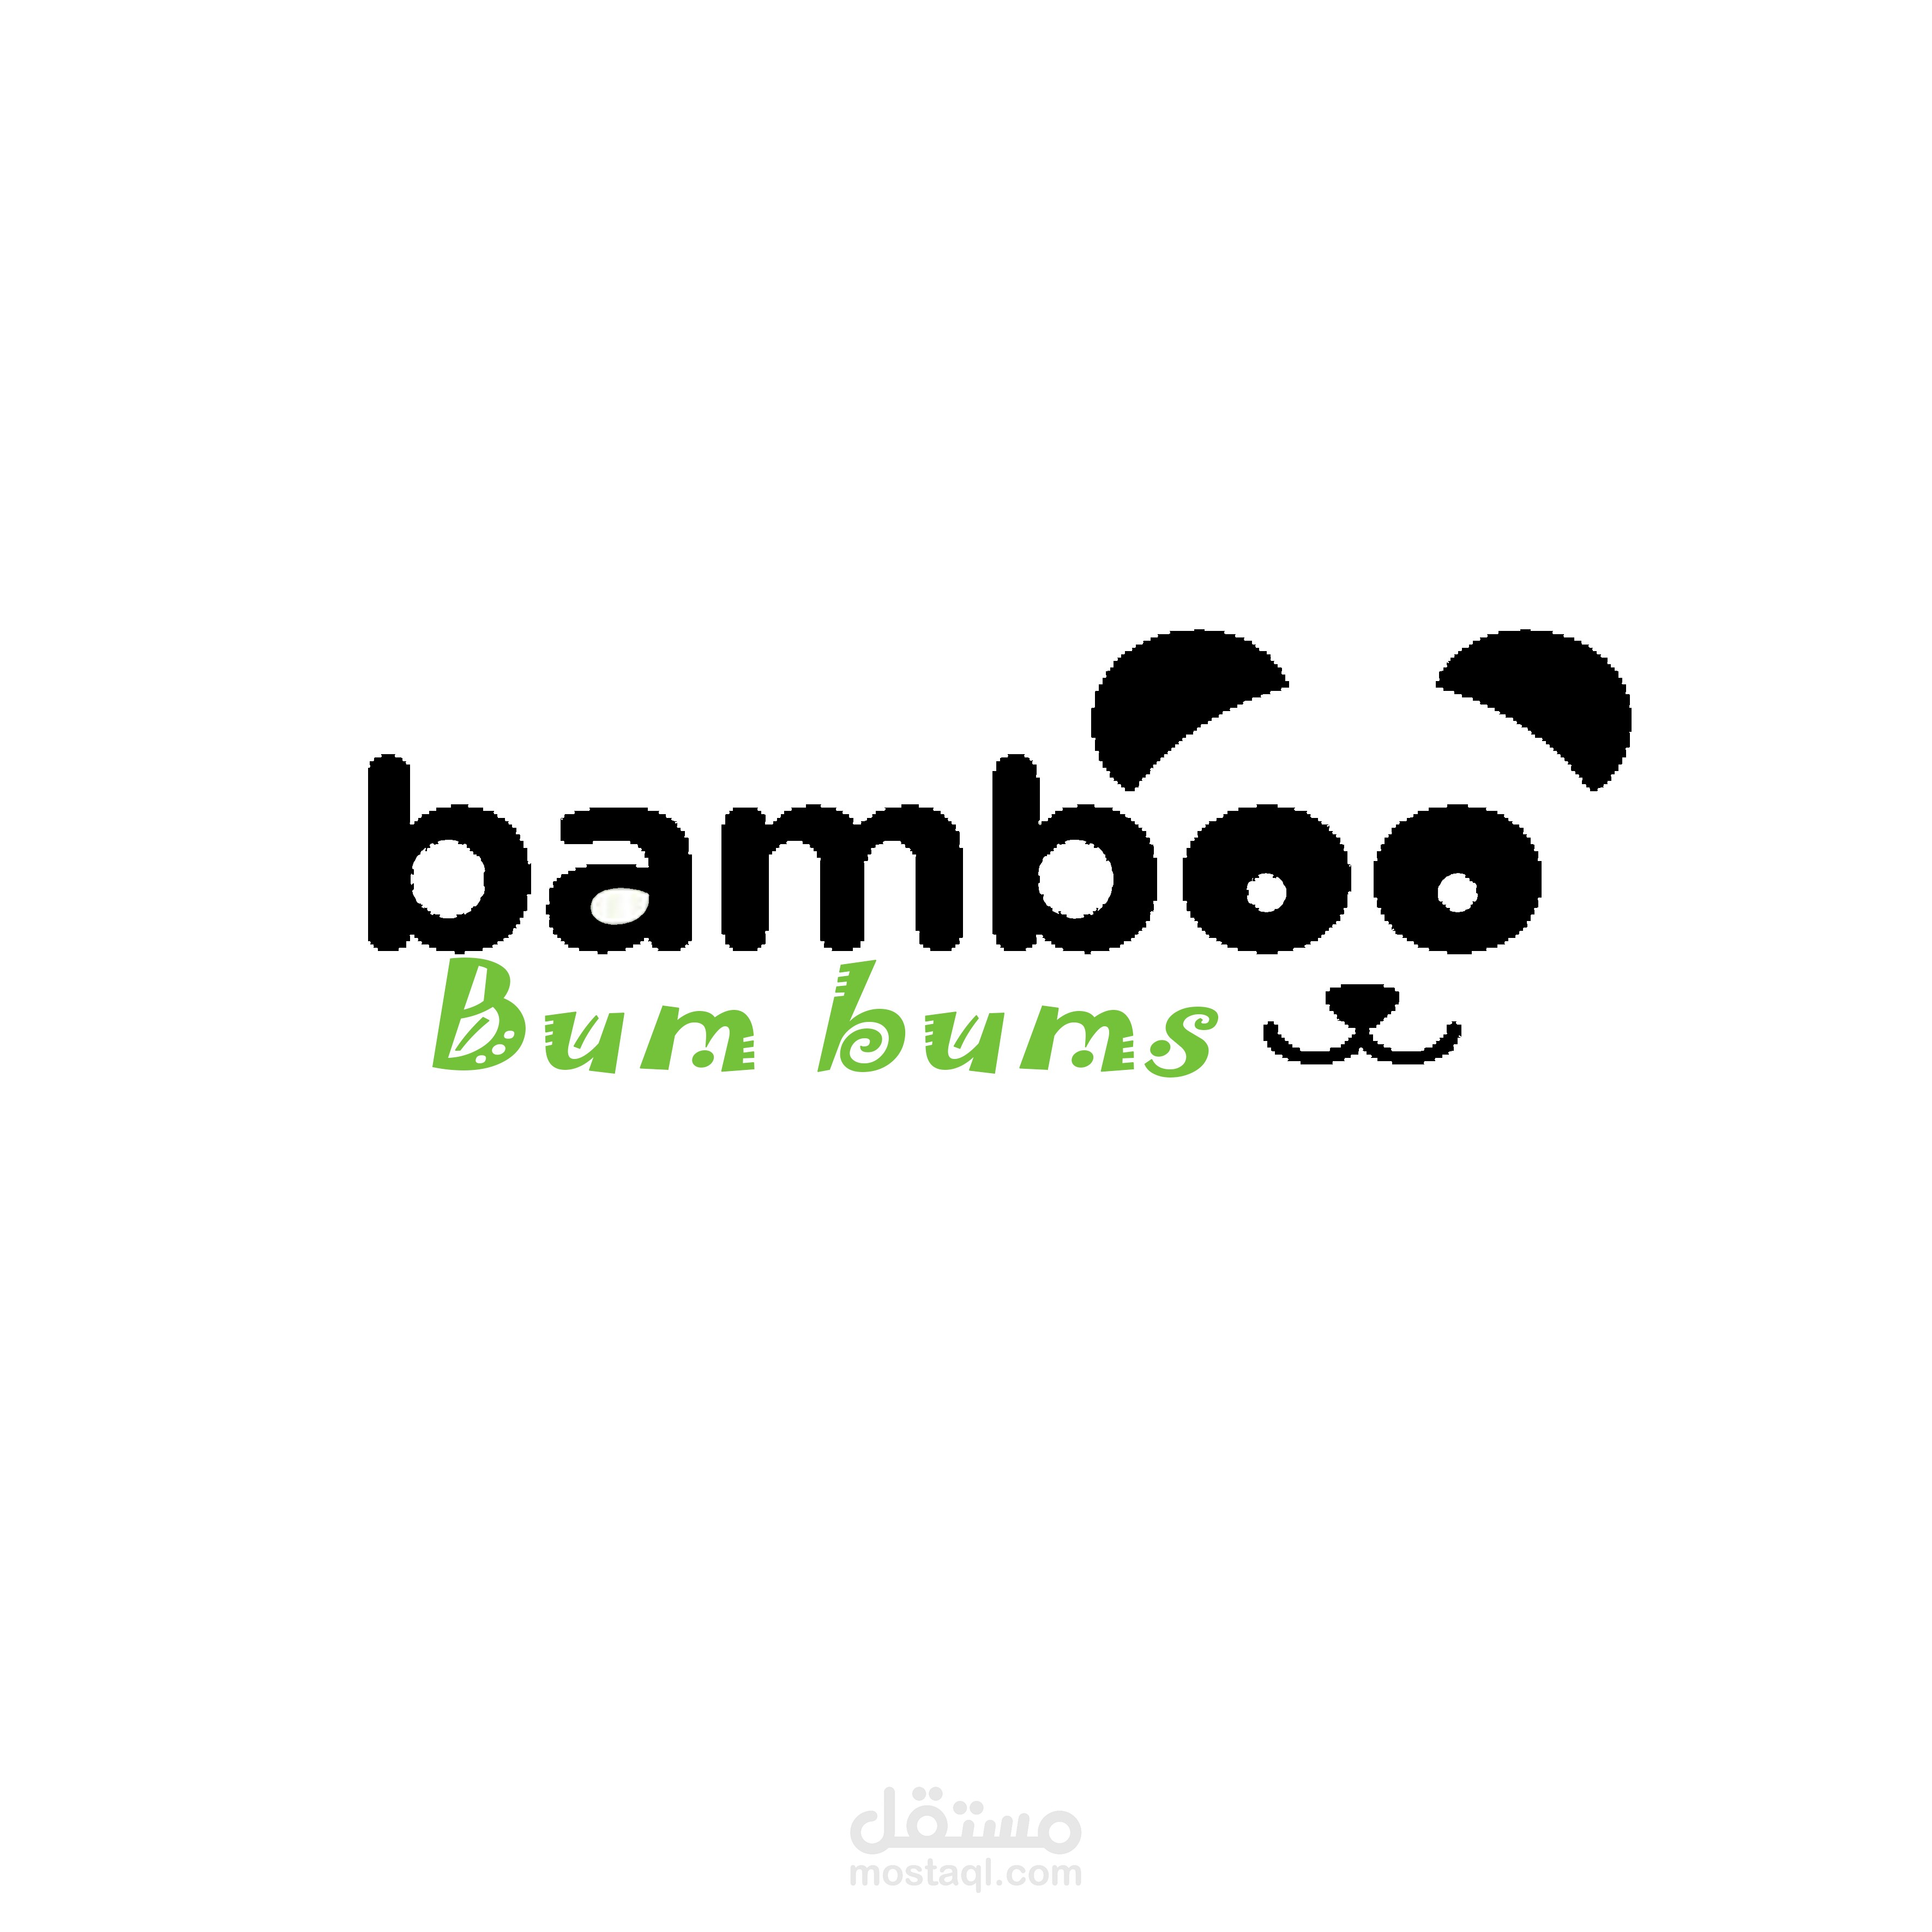 bamboo-bum-bums